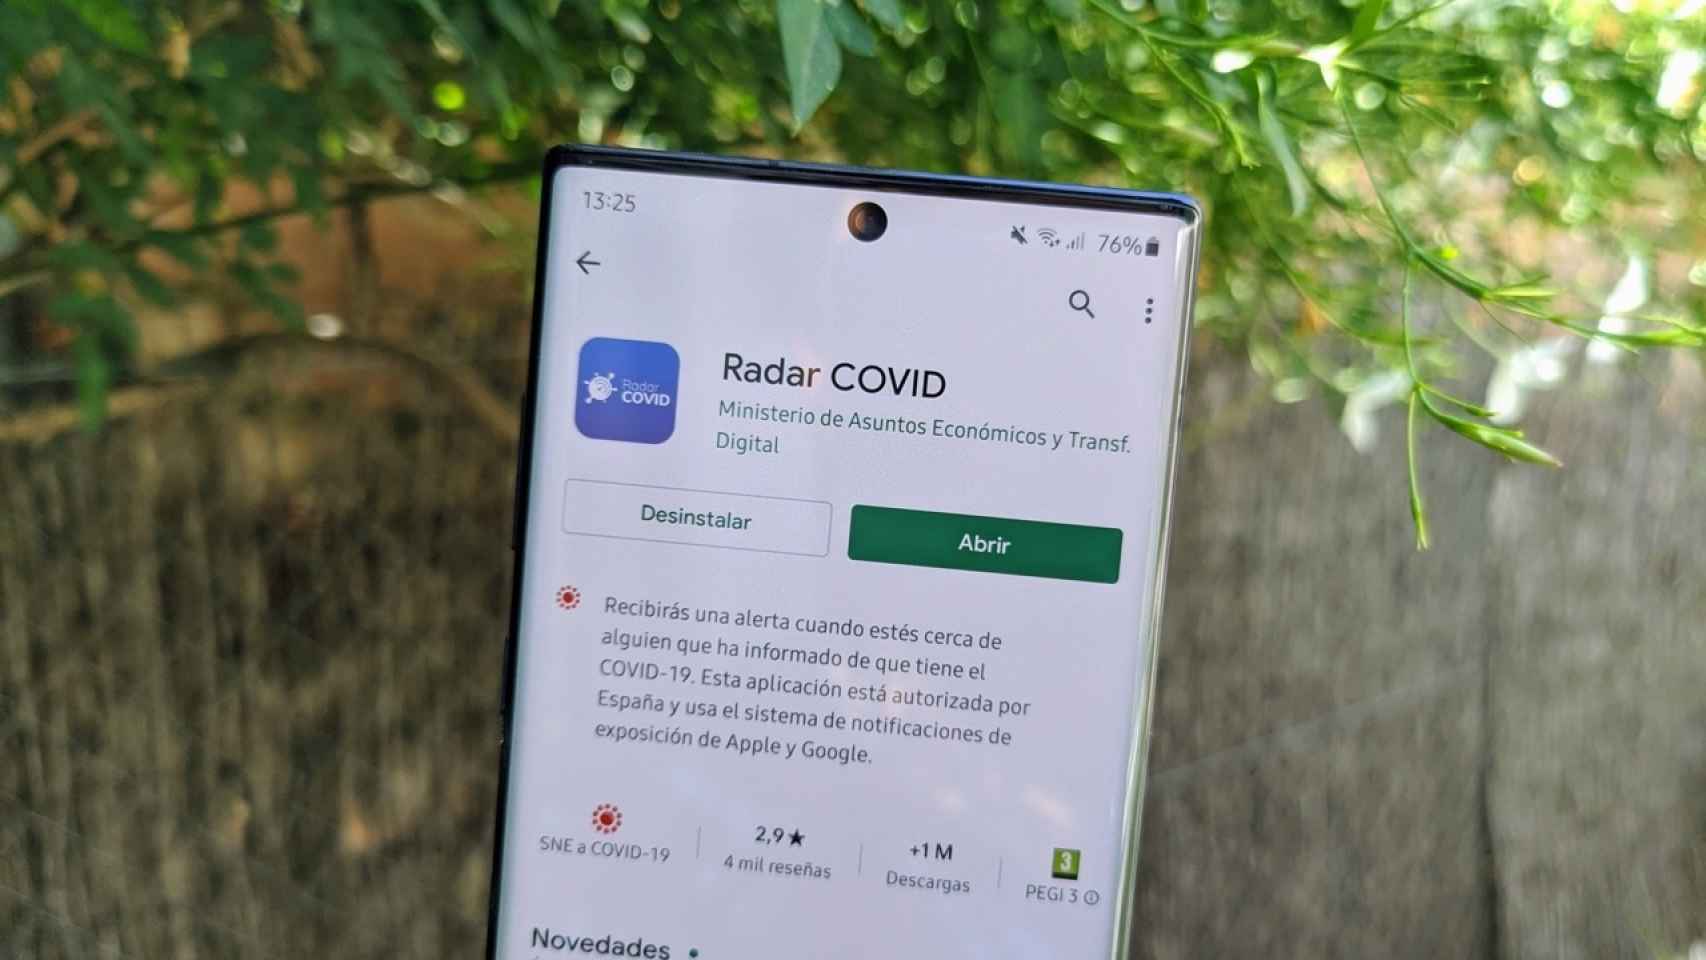 Radar COVID es una de las pocas apps que debería tener acceso a esos datos